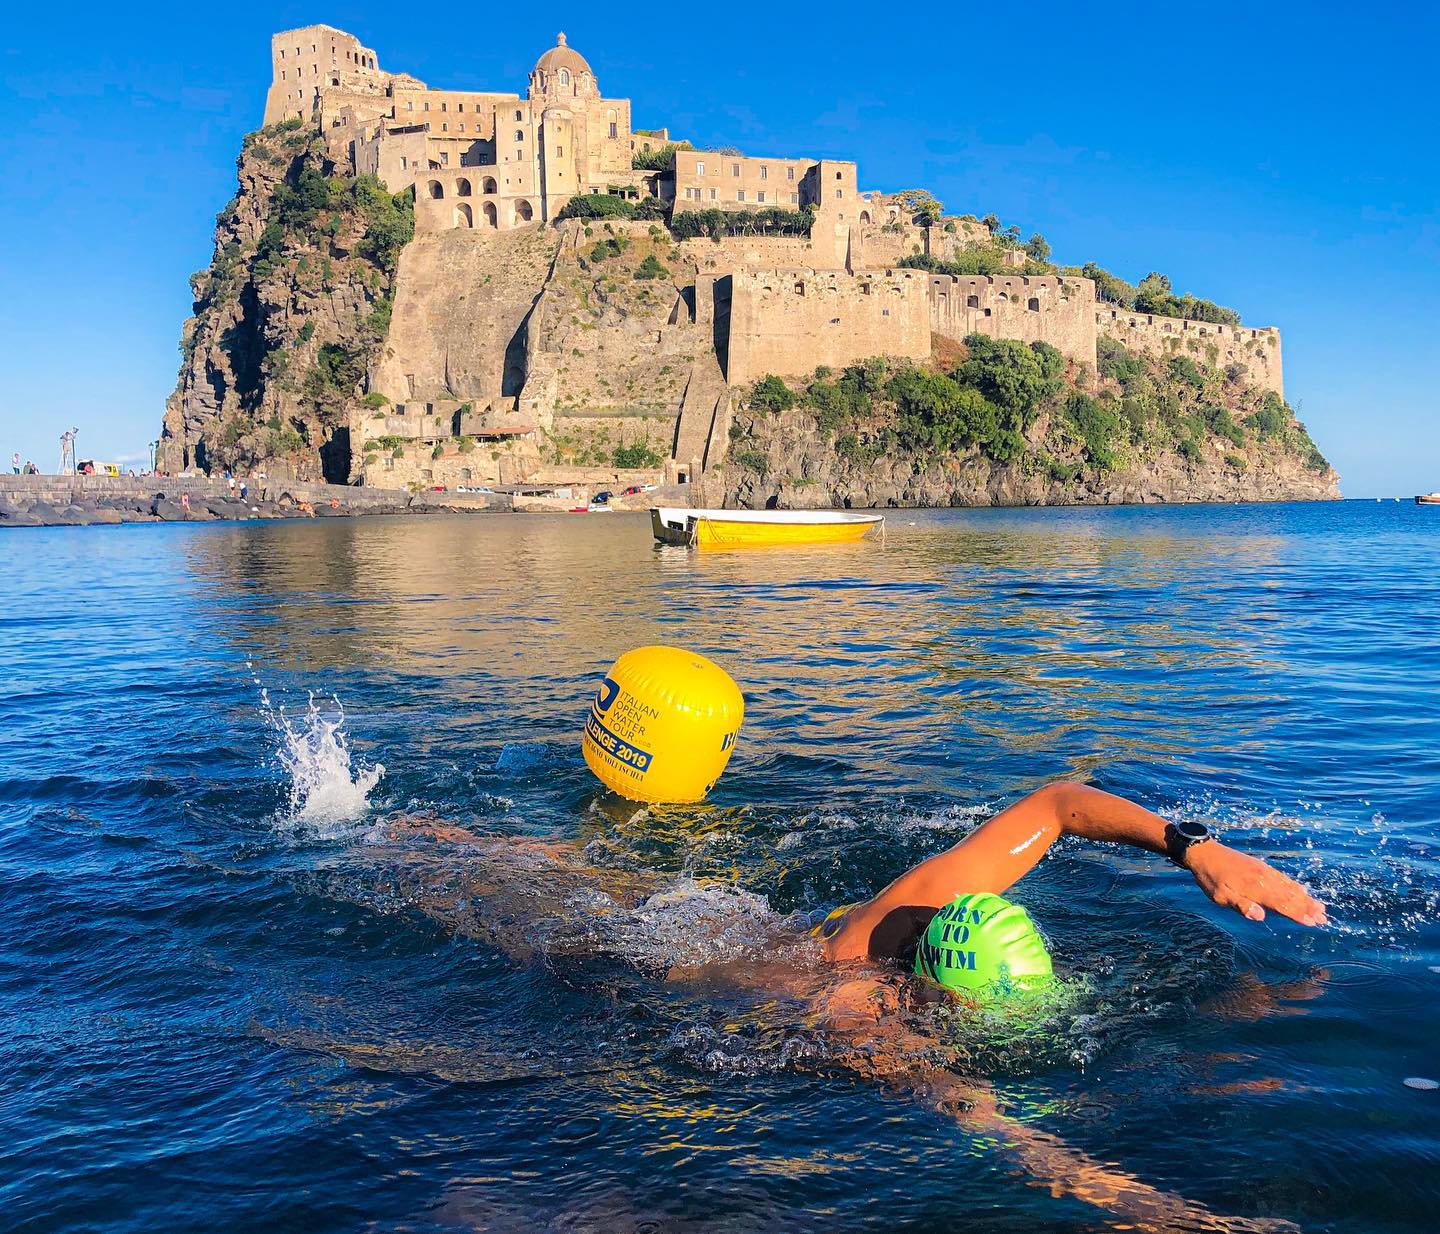 ITALIAN OPEN WATER TOUR, BELLISSIMO EVENTO DI NUOTO IN ACQUE